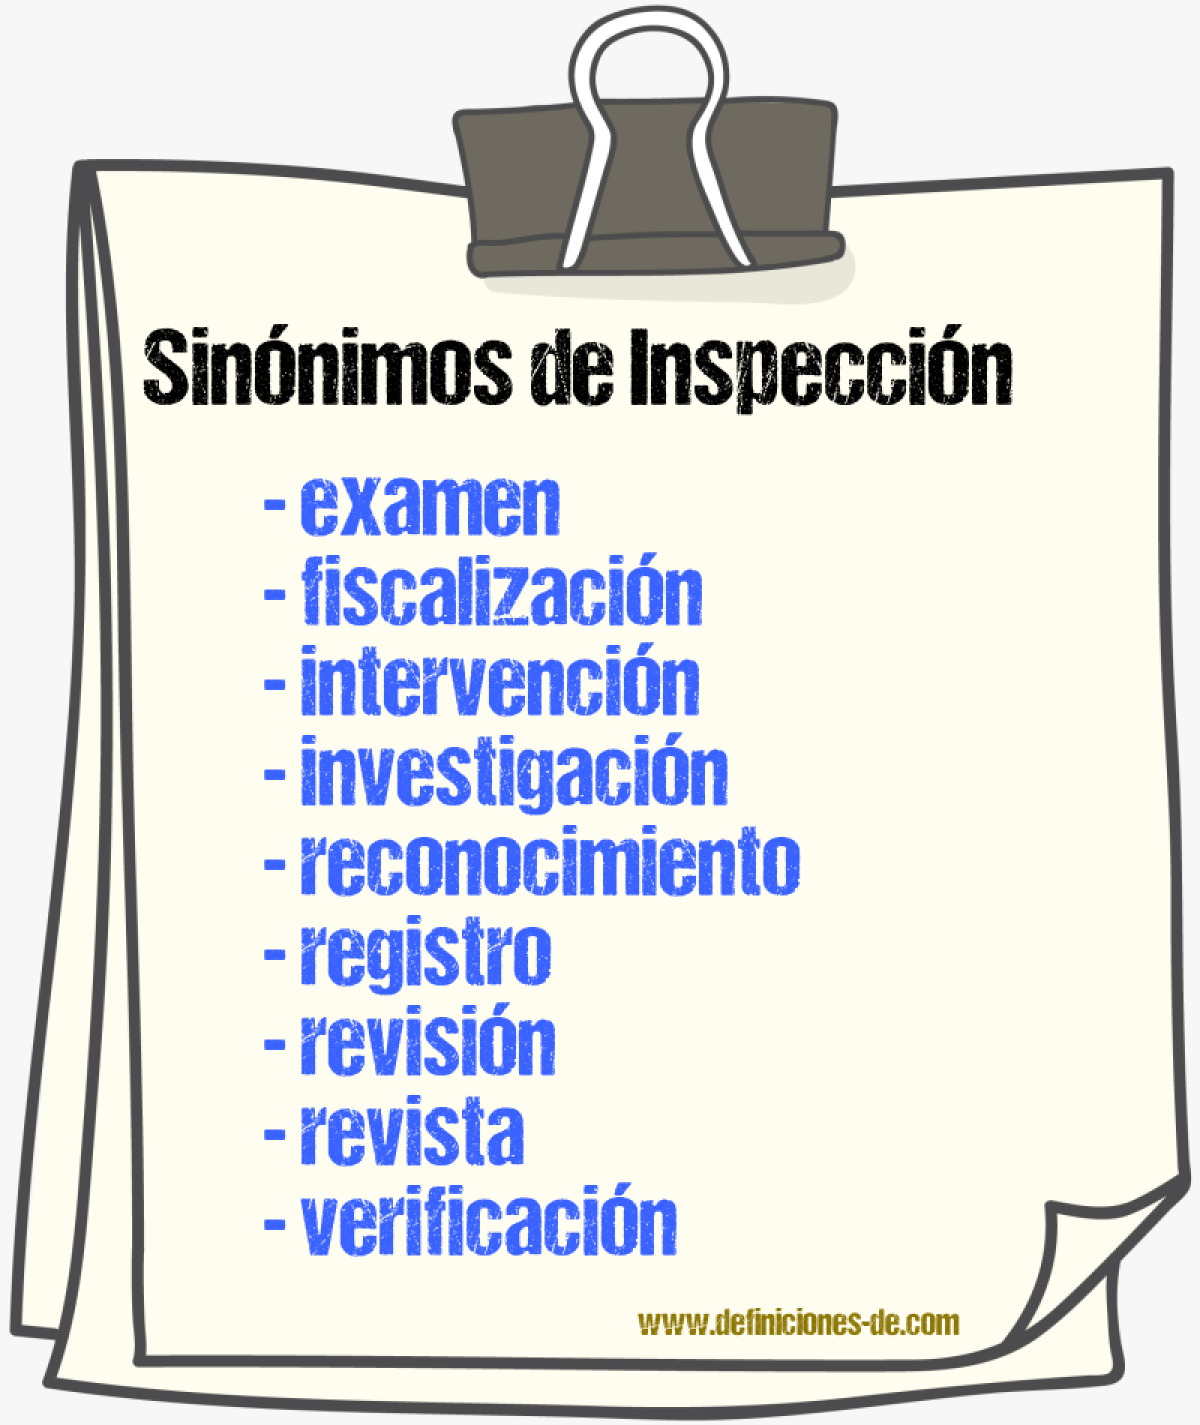 Sinónimos de inspección